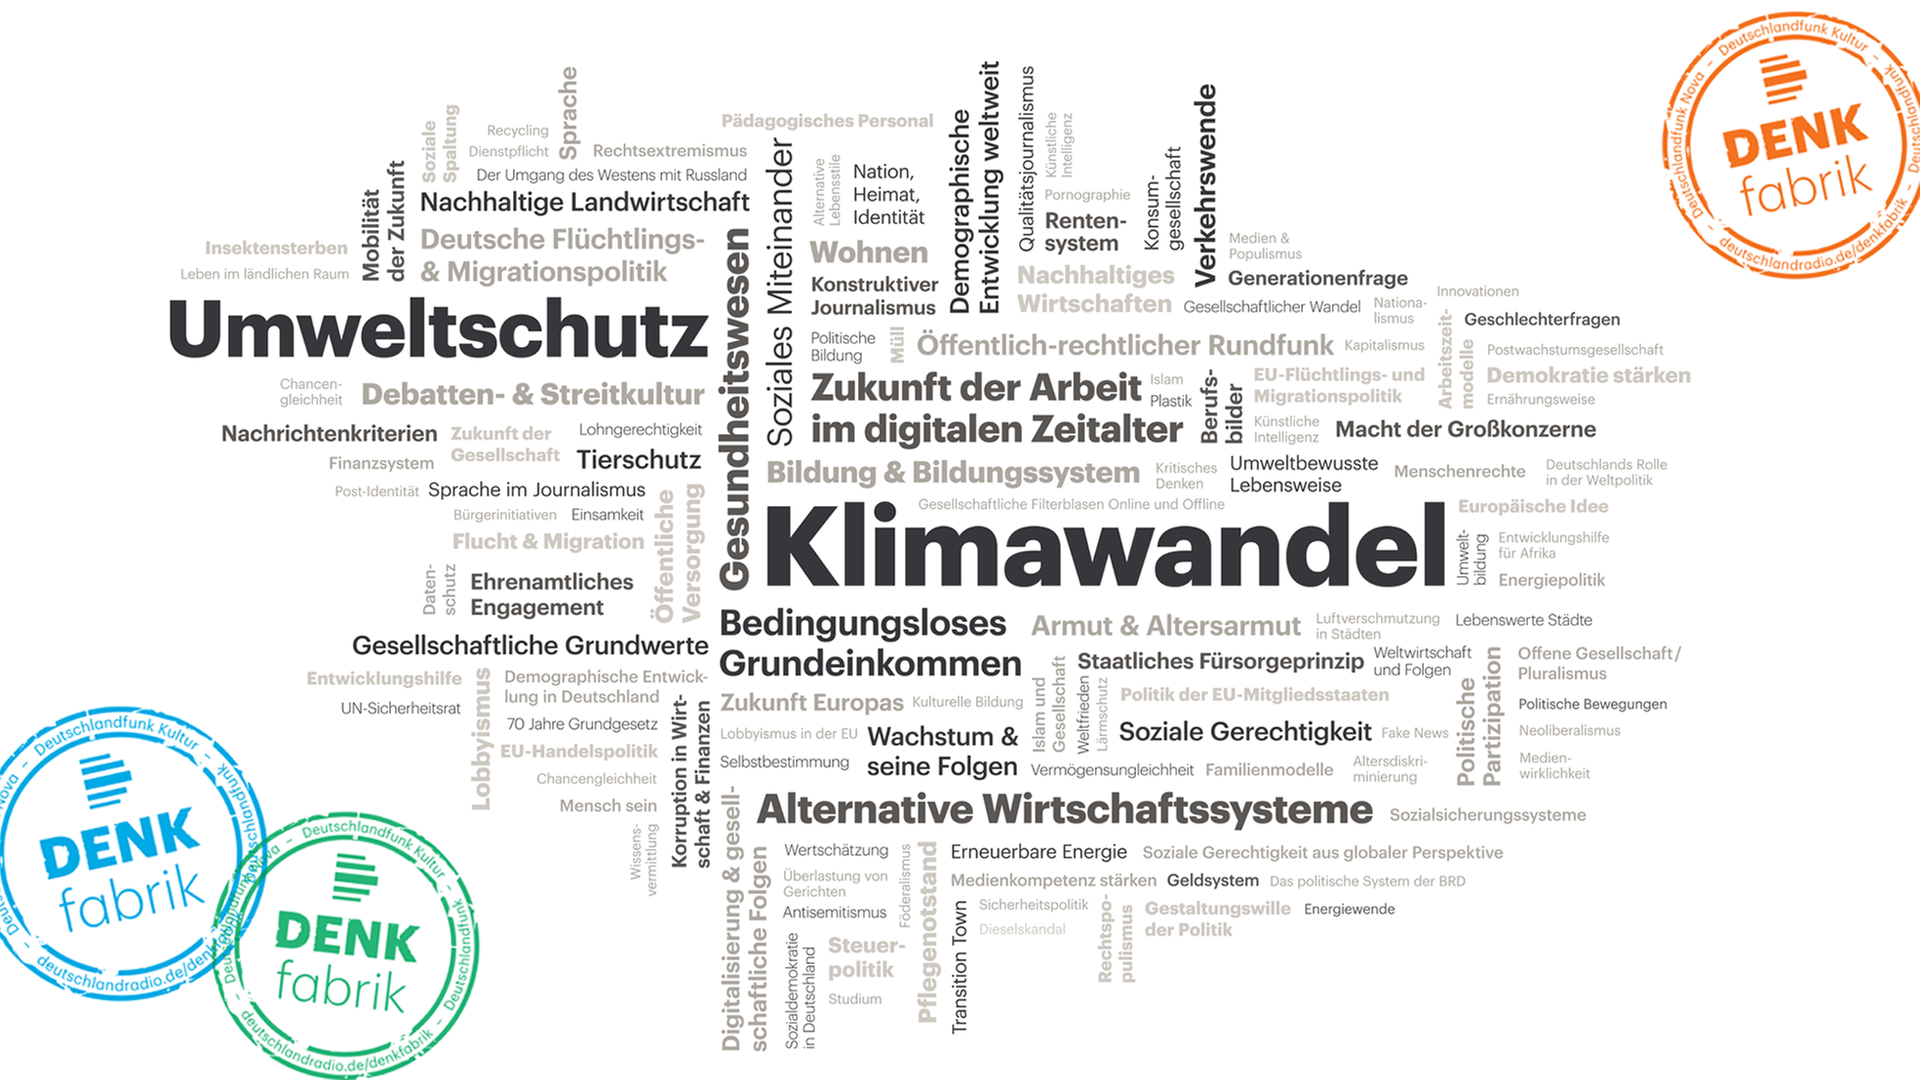 Eine Wortwolke der Themeneinreichungen von Hörerinnen und Hörern zum Thema des Jahres 2019 für die Denkfabrik von Deutschlandradio